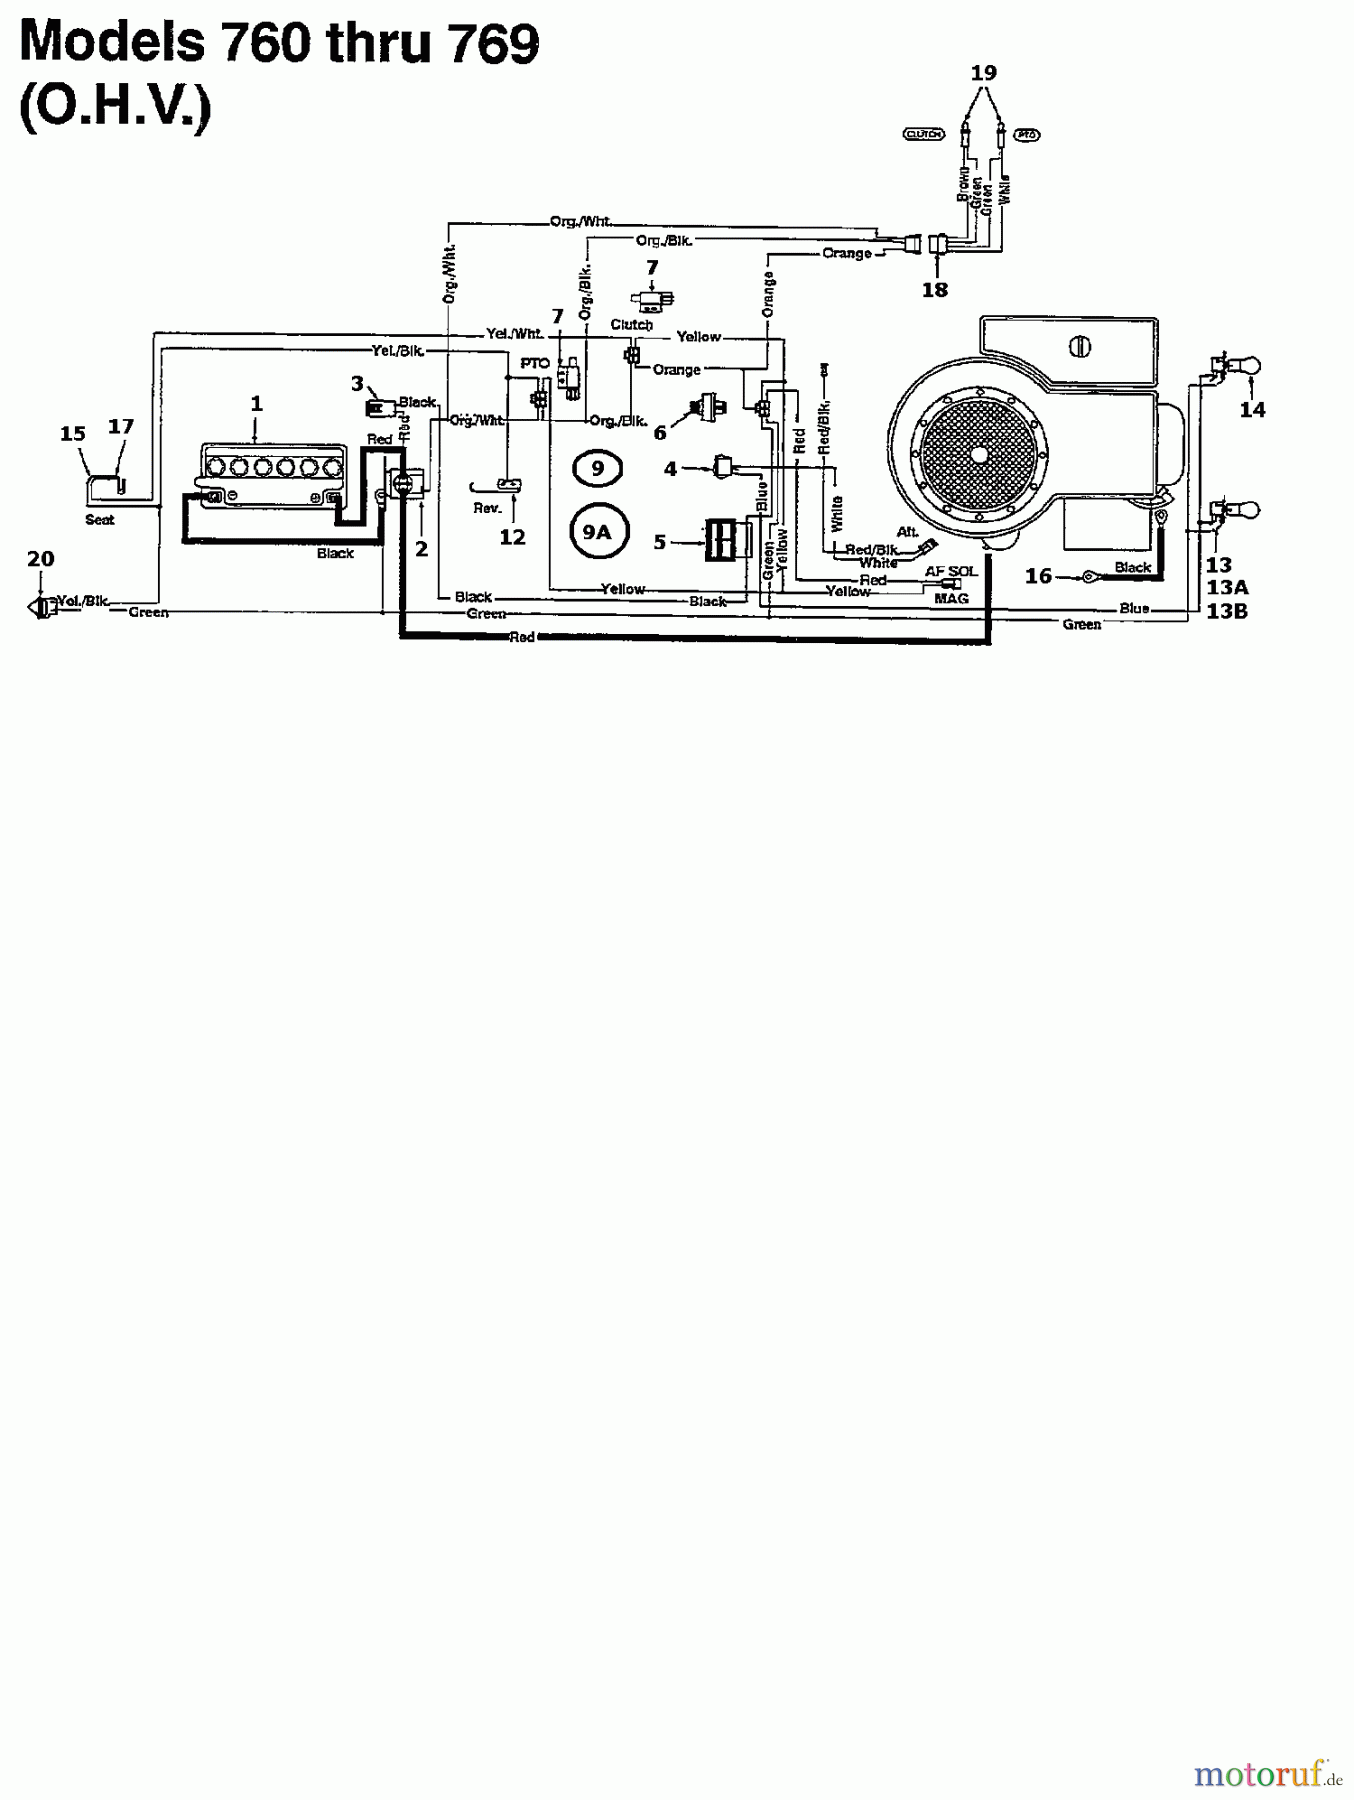  Brill Tracteurs de pelouse 102/13 RTH 135N767N629  (1995) Plan electrique pour O.H.V.